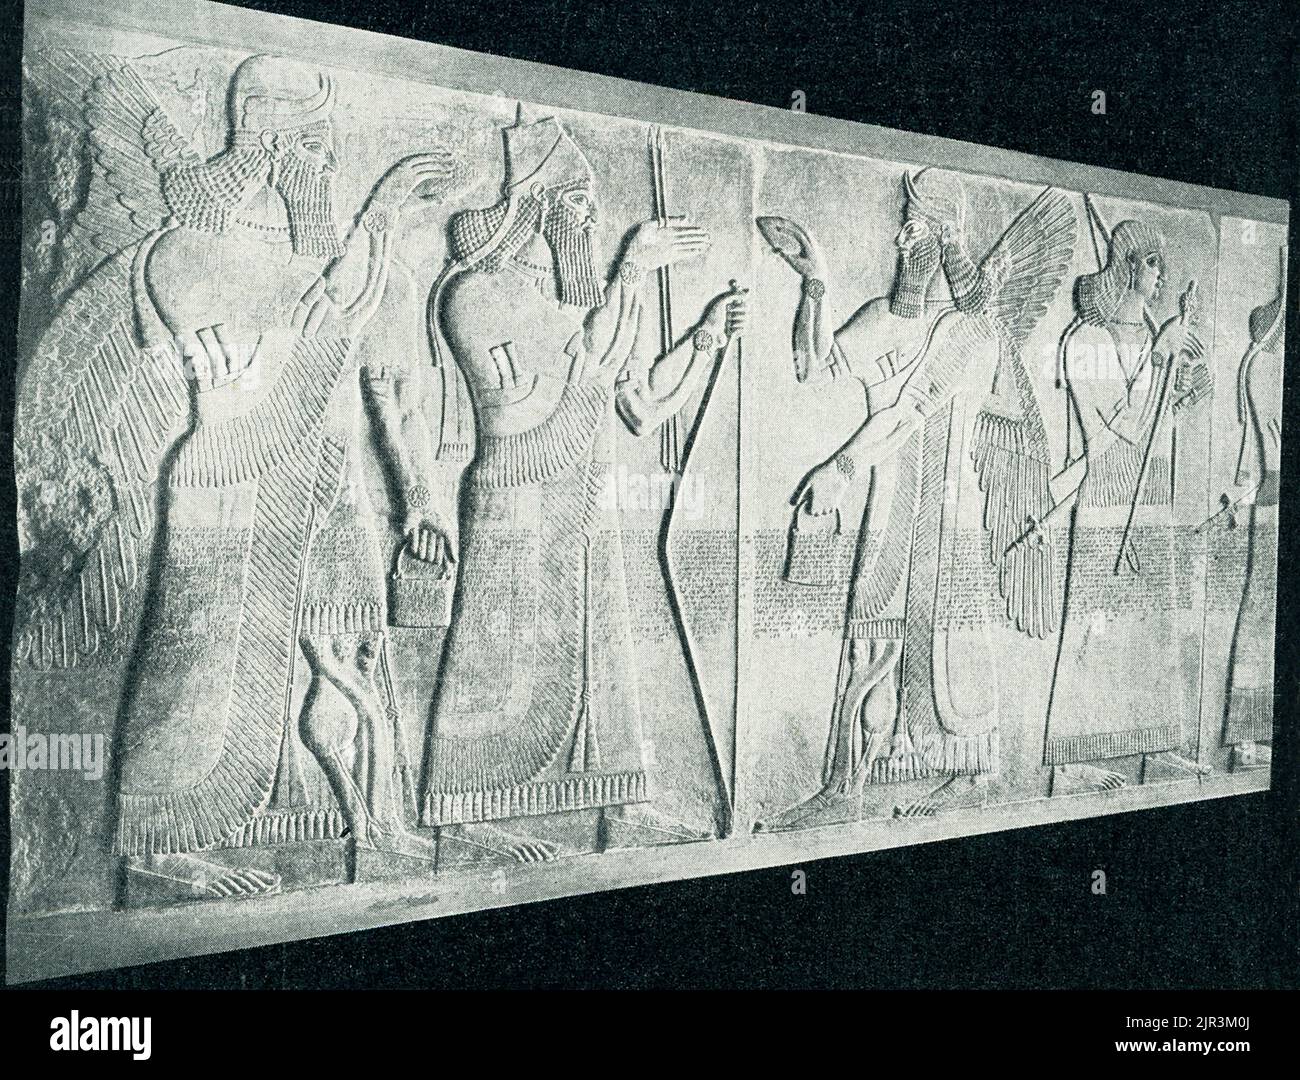 El título de 1910 dice: 'Rey asirio entre genie - en el Museo Real de Berlín. La mítica figura guardiana asiria, llamada Genius, lleva un casco de dos cuernos y un vestido con flecos y lleva una daga de doble mango, todos los atributos de su naturaleza divina. Sus manos se mueven protectivamente hacia un árbol en flor, apenas visible en el borde derecho de la escultura. Este relieve, una vez pintado de forma brillante, es un fragmento del palacio del noroeste construido por el rey asirio Ashirnasirpal II (883-859 AEC) en su capital, Kalhu, ahora la ciudad iraquí de Nimrud. Docenas de enormes losas de piedra talladas con Foto de stock